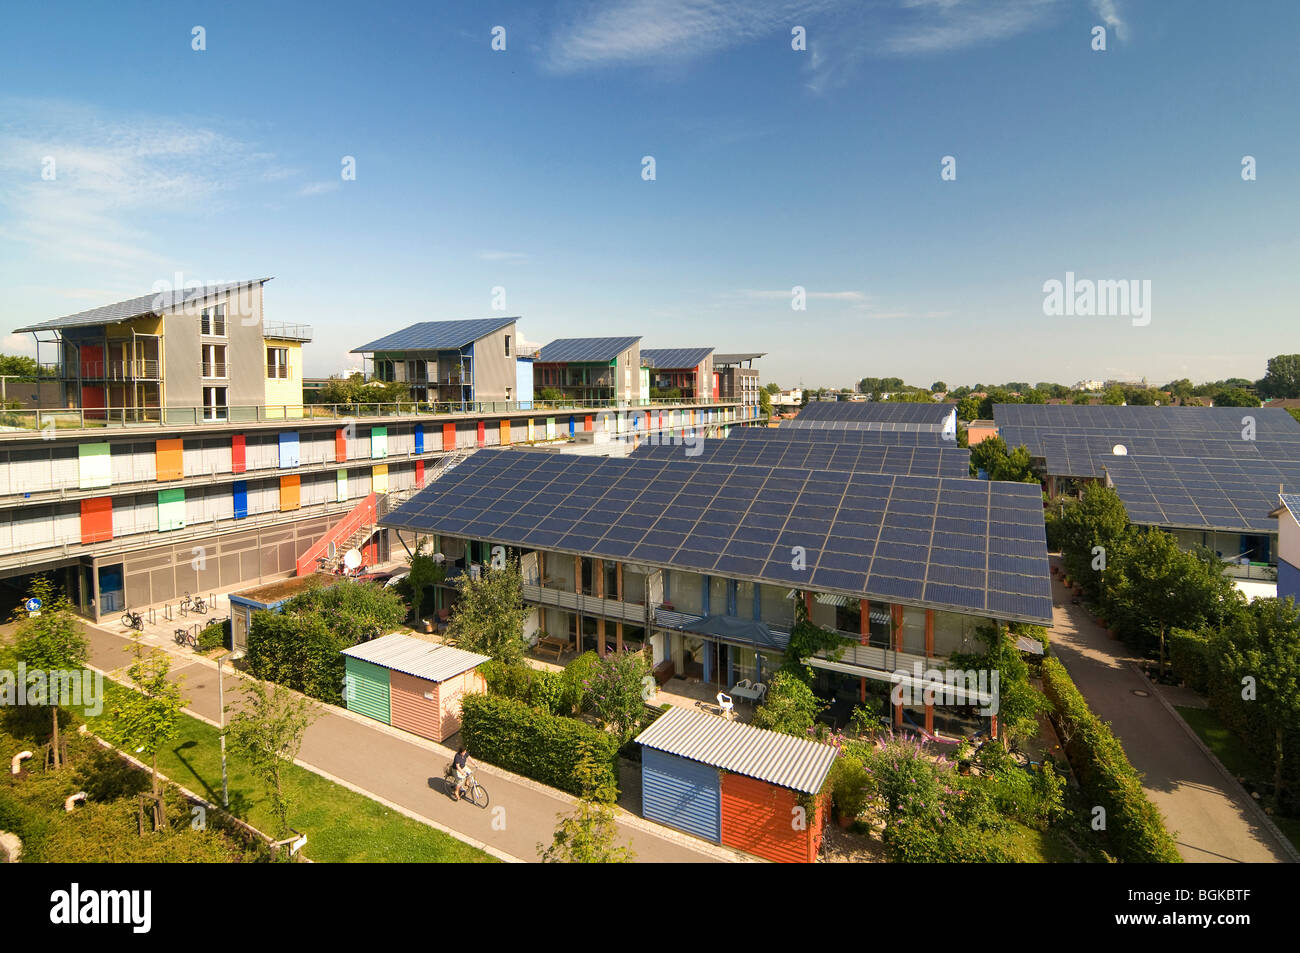 Dächer mit Solaranlagen, ökologische Vauban-Viertel in Freiburg, Baden-Württemberg, Deutschland, Europa Stockfoto